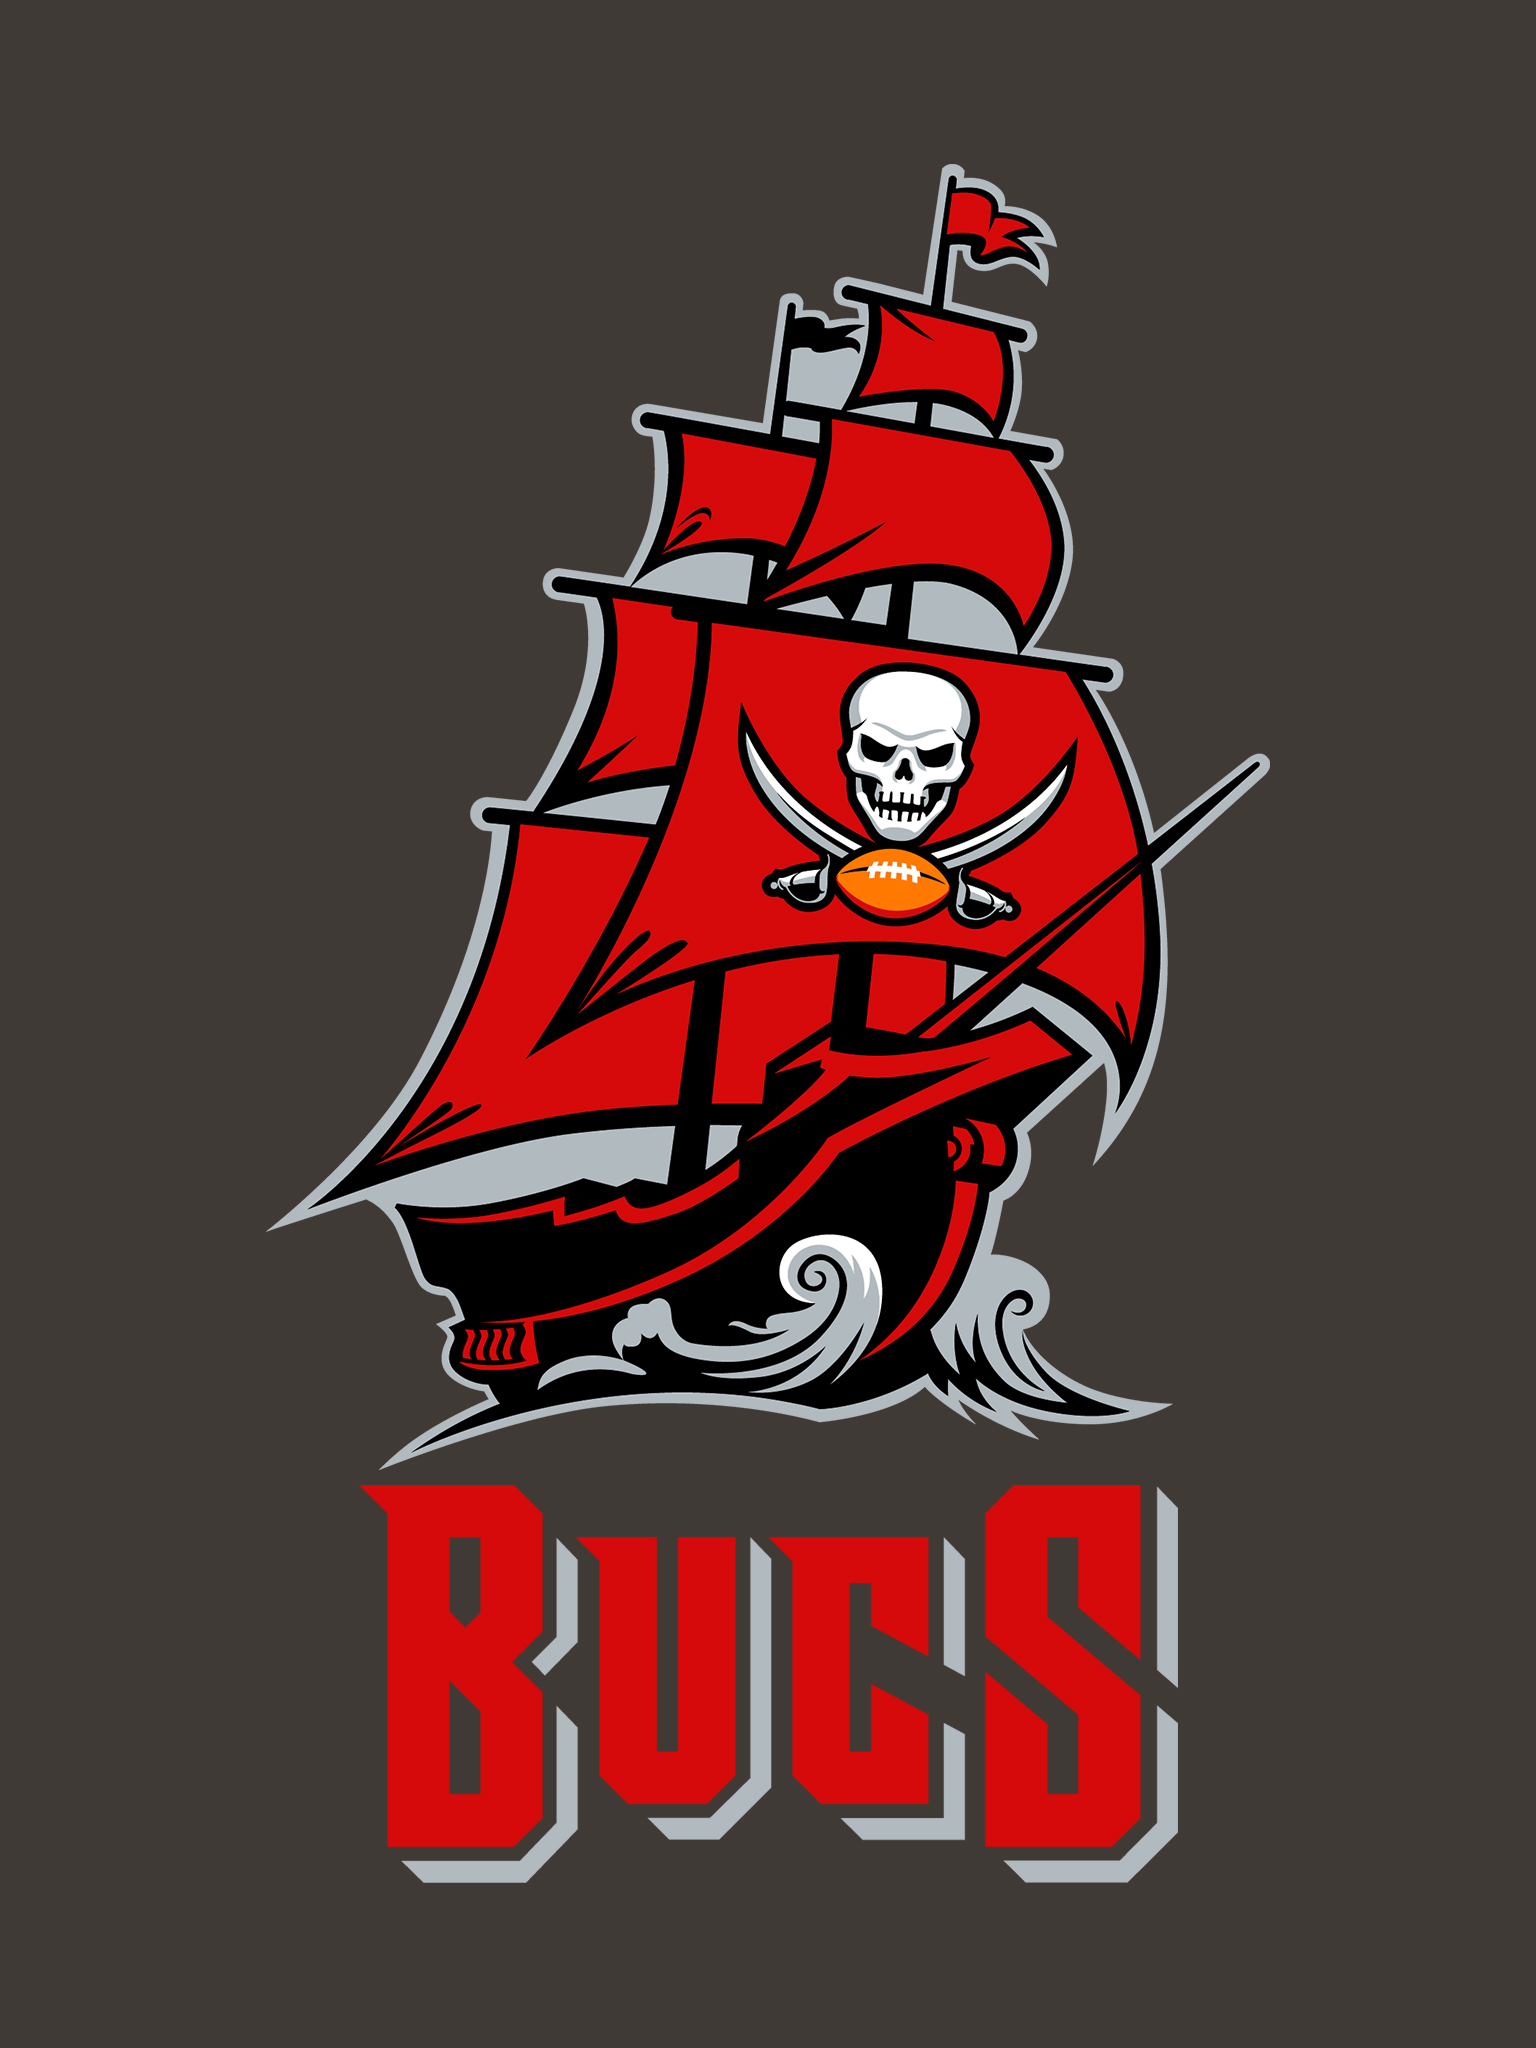 Tampa Bay Buccaneers Ship - Tampa Bay Buccaneers Ship Logos : Tampa bay